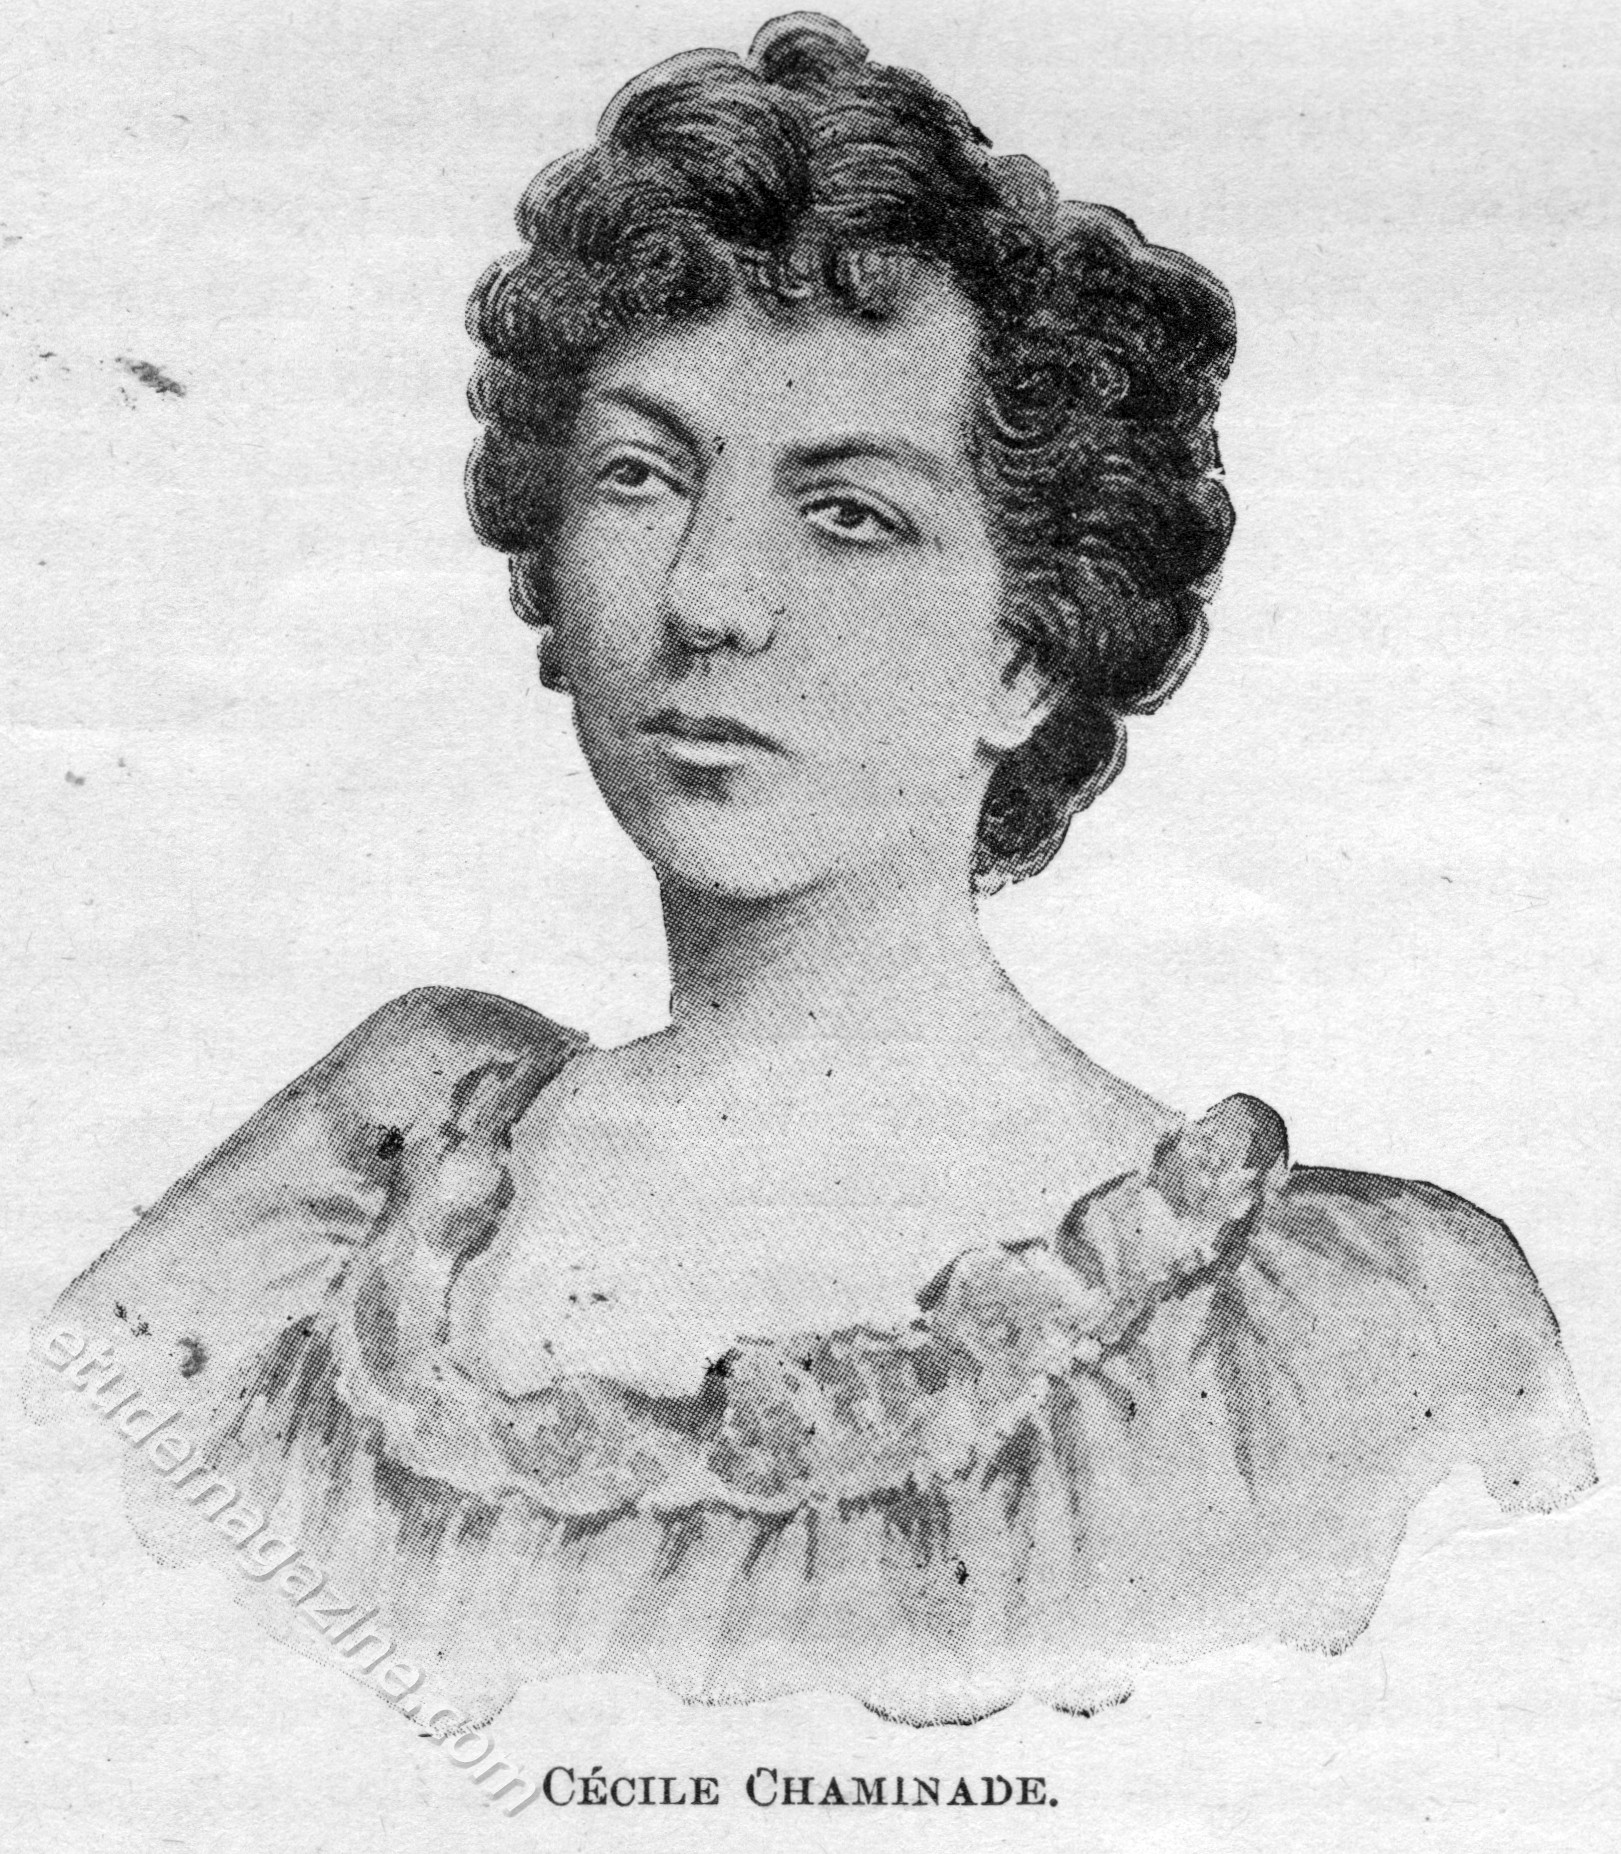 Cécile Chaminade. November, 1899